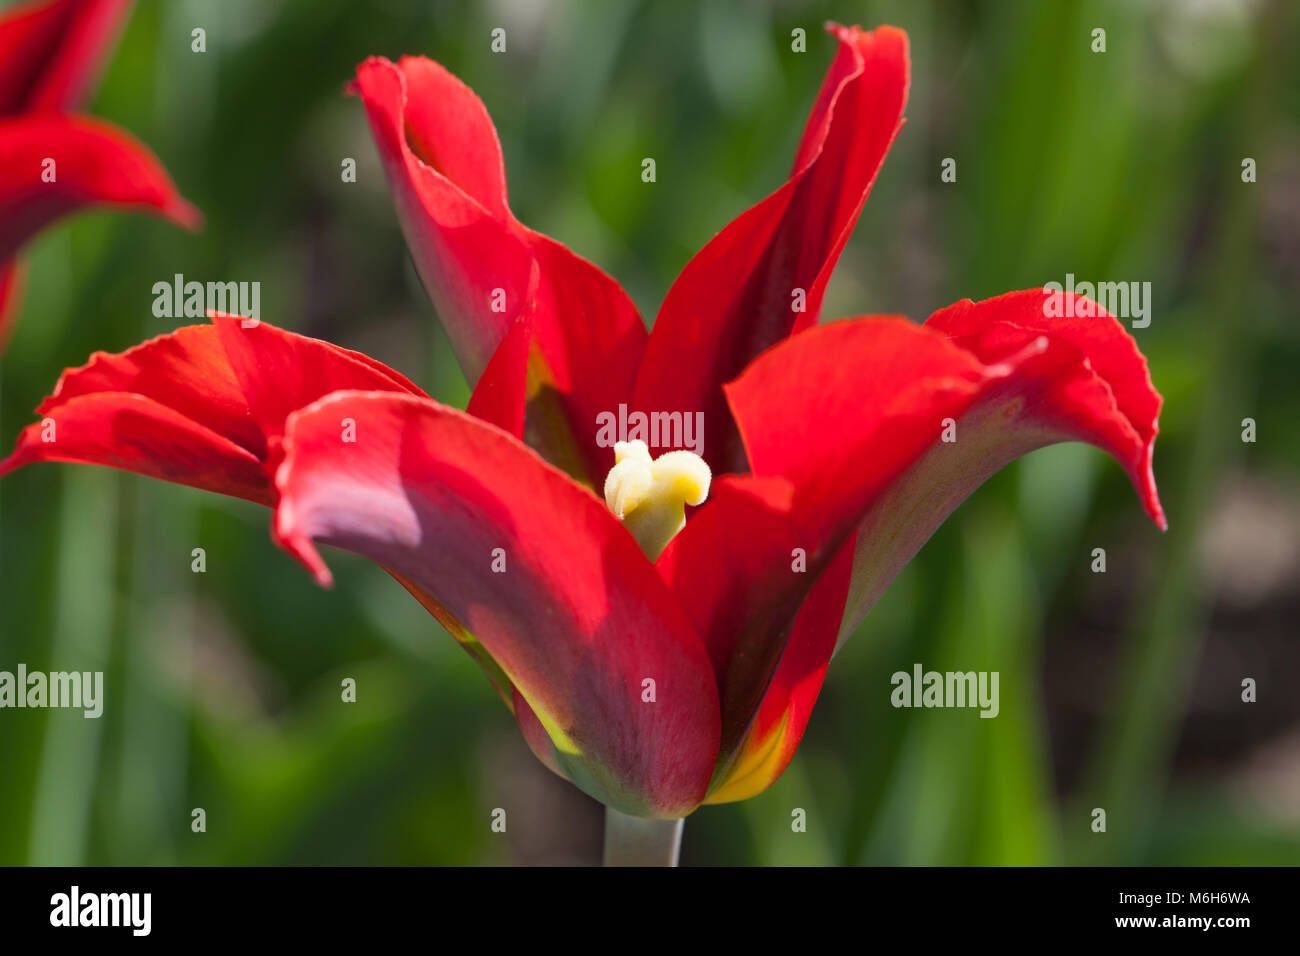 'Red Springgreen' Viridiflora Tulip, Viridifloratulpan (Tulipa gesneriana) Stock Photo